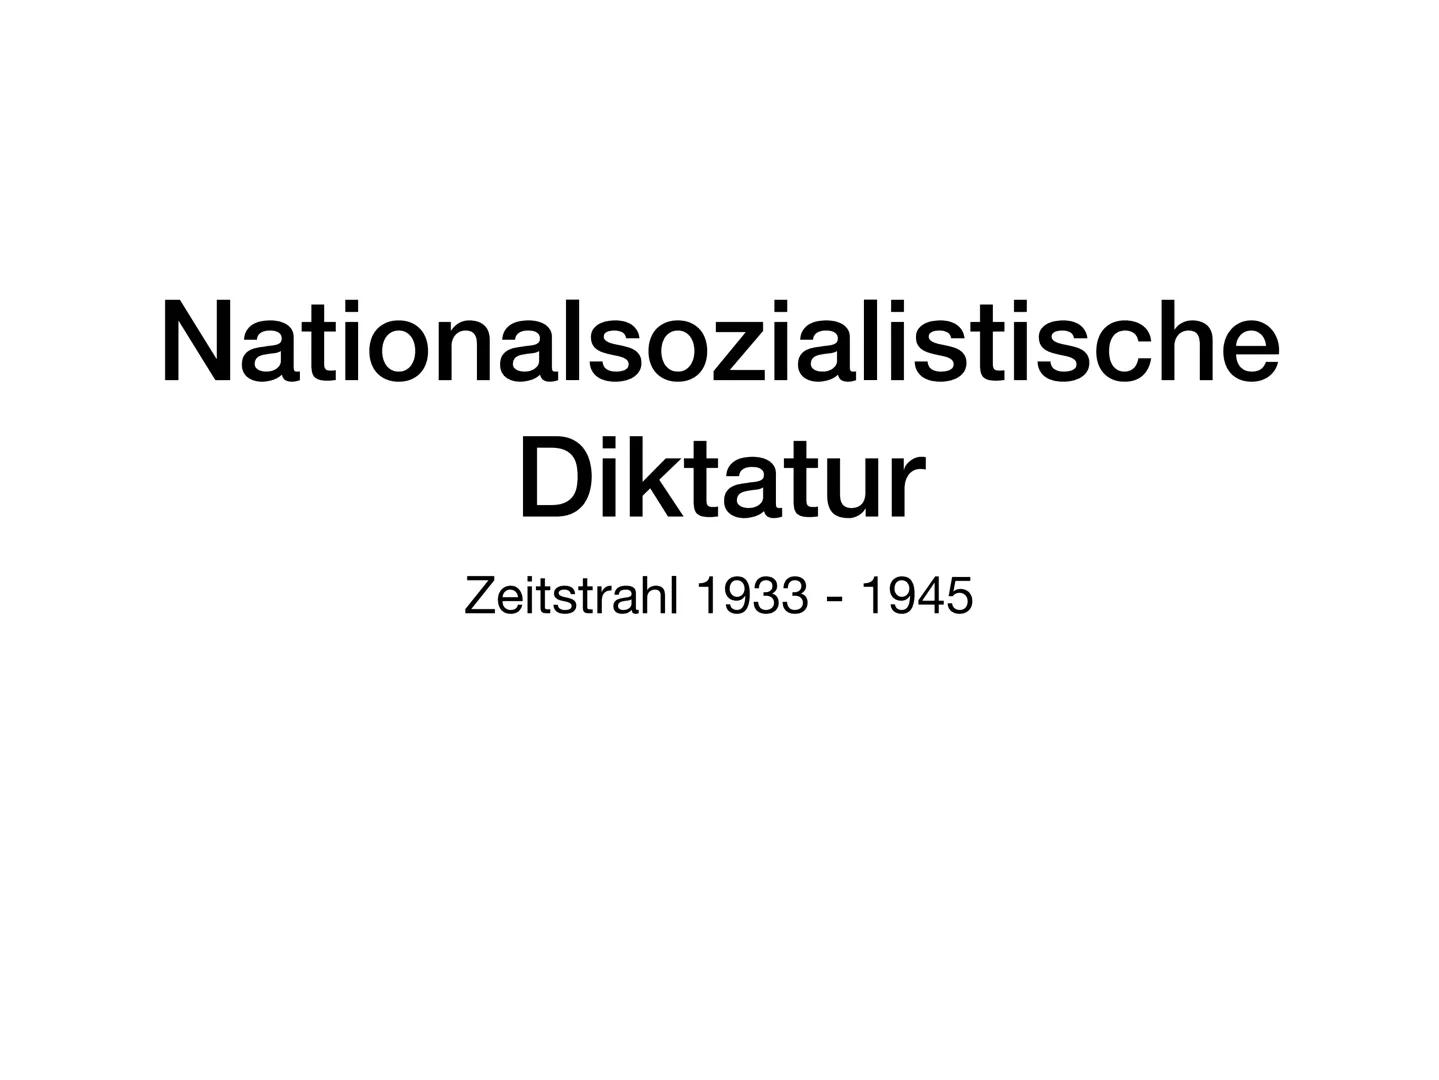 Nationalsozialistische
Diktatur
Zeitstrahl 1933-1945 ZEITSTRAHL 1933-1945
30.Januar 1933: NSDAP-Vorsitzender Adolf Hitler wird von Paul
Hind